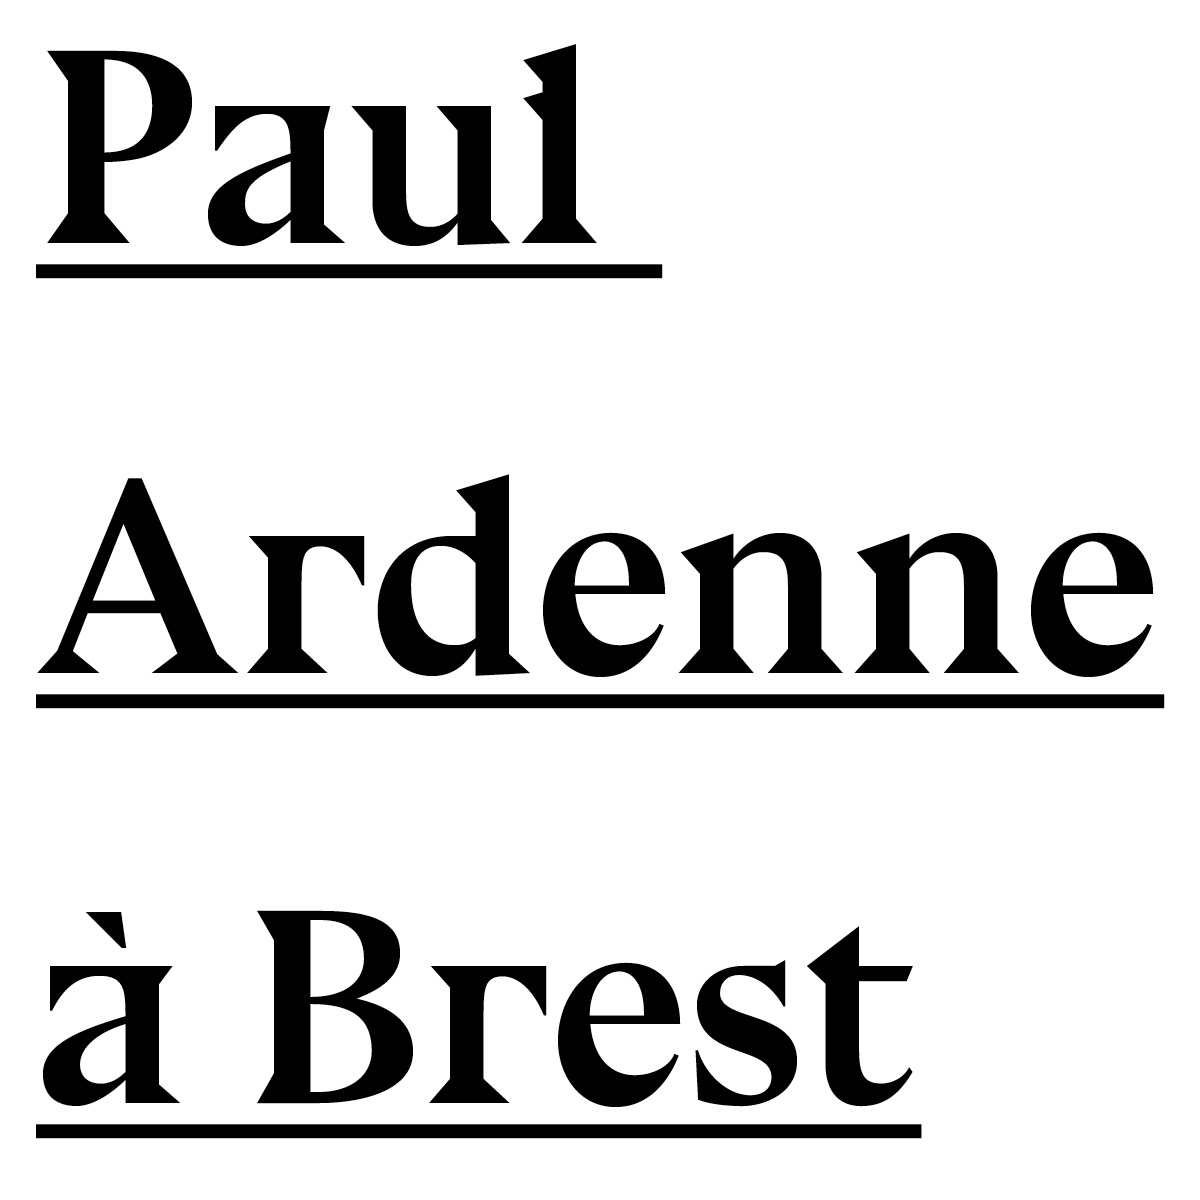 Texte Paul Ardenne à Brest-Texte noir souligné